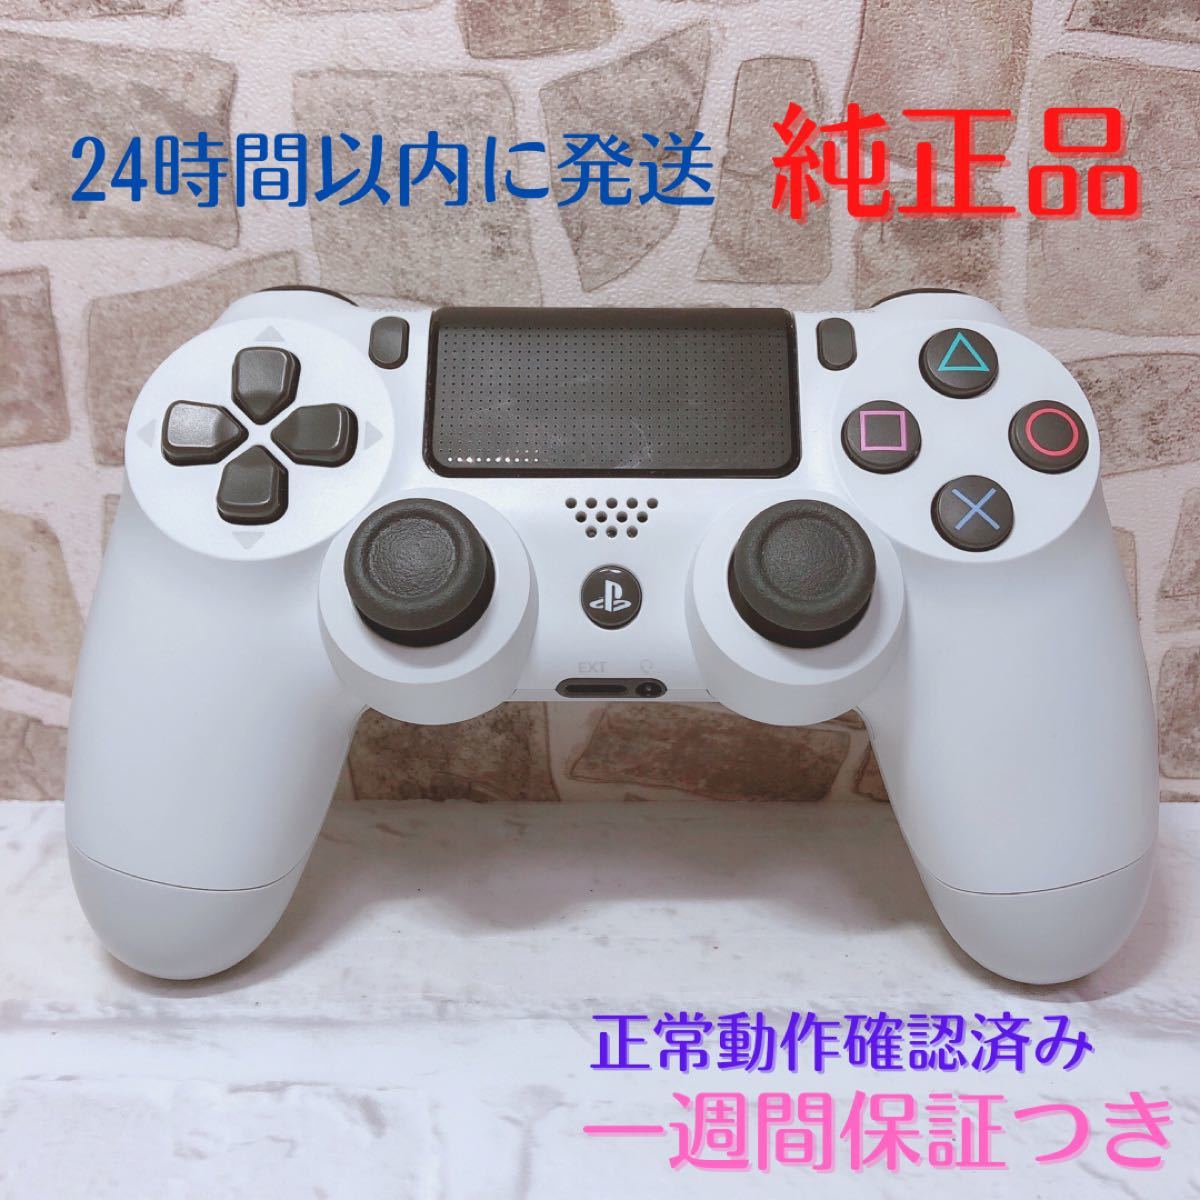 13 グレイシャーホワイト PS4コントローラー デュアルショック4 DUALSHOCK4 ワイヤレスコントローラー　新型